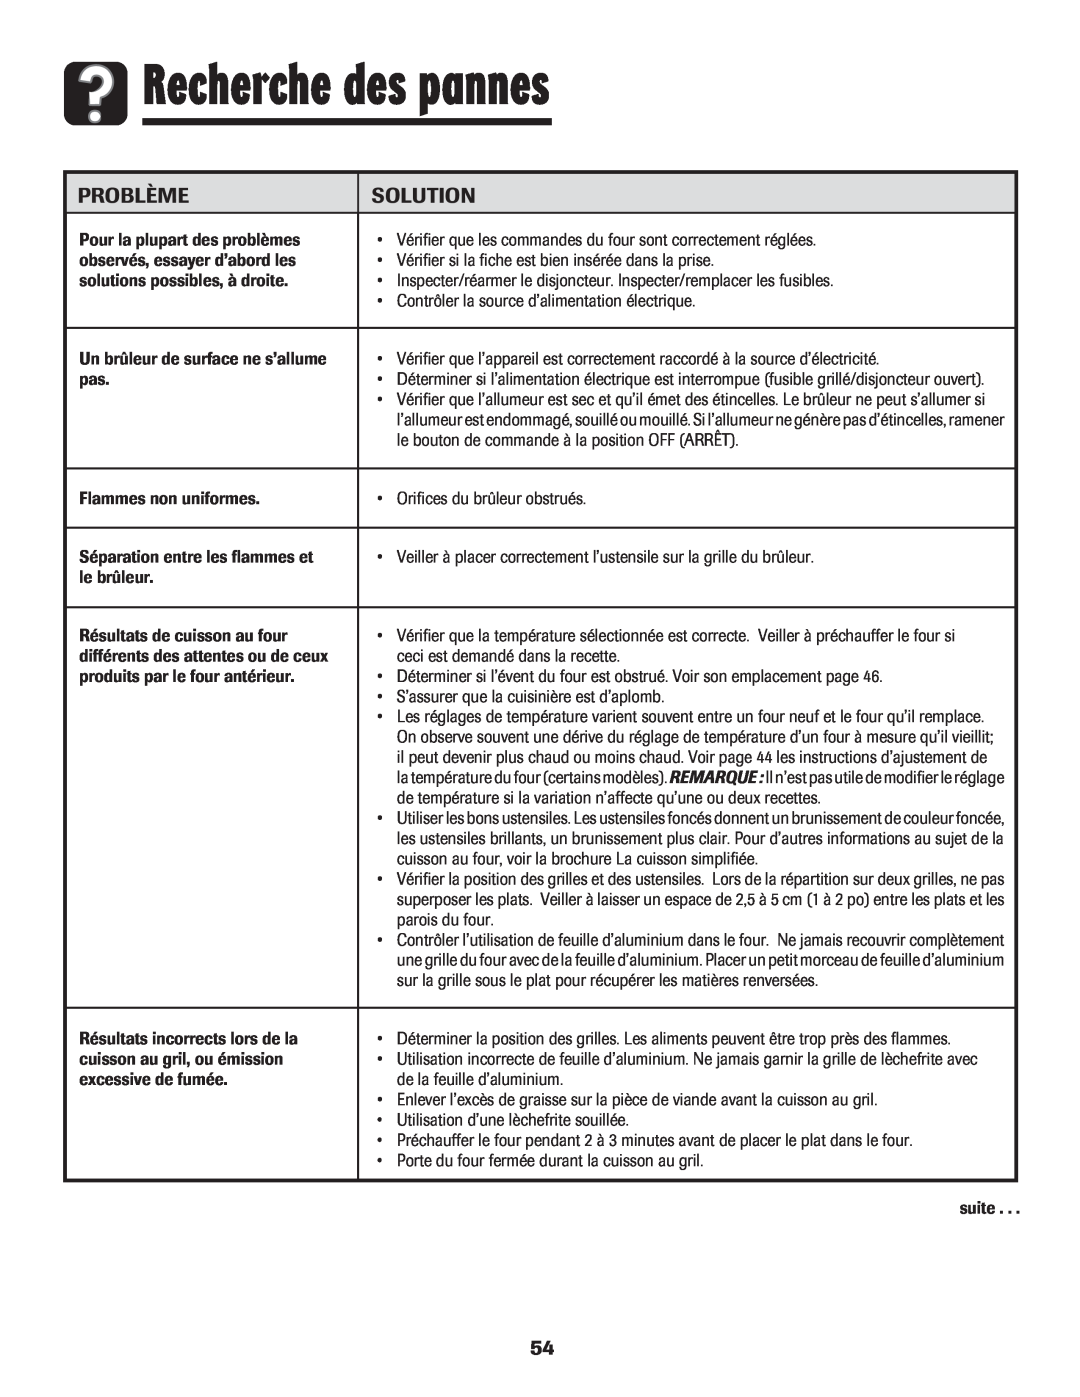 Amana 8113P515-60 manual Recherche des pannes, Problème, Solution 